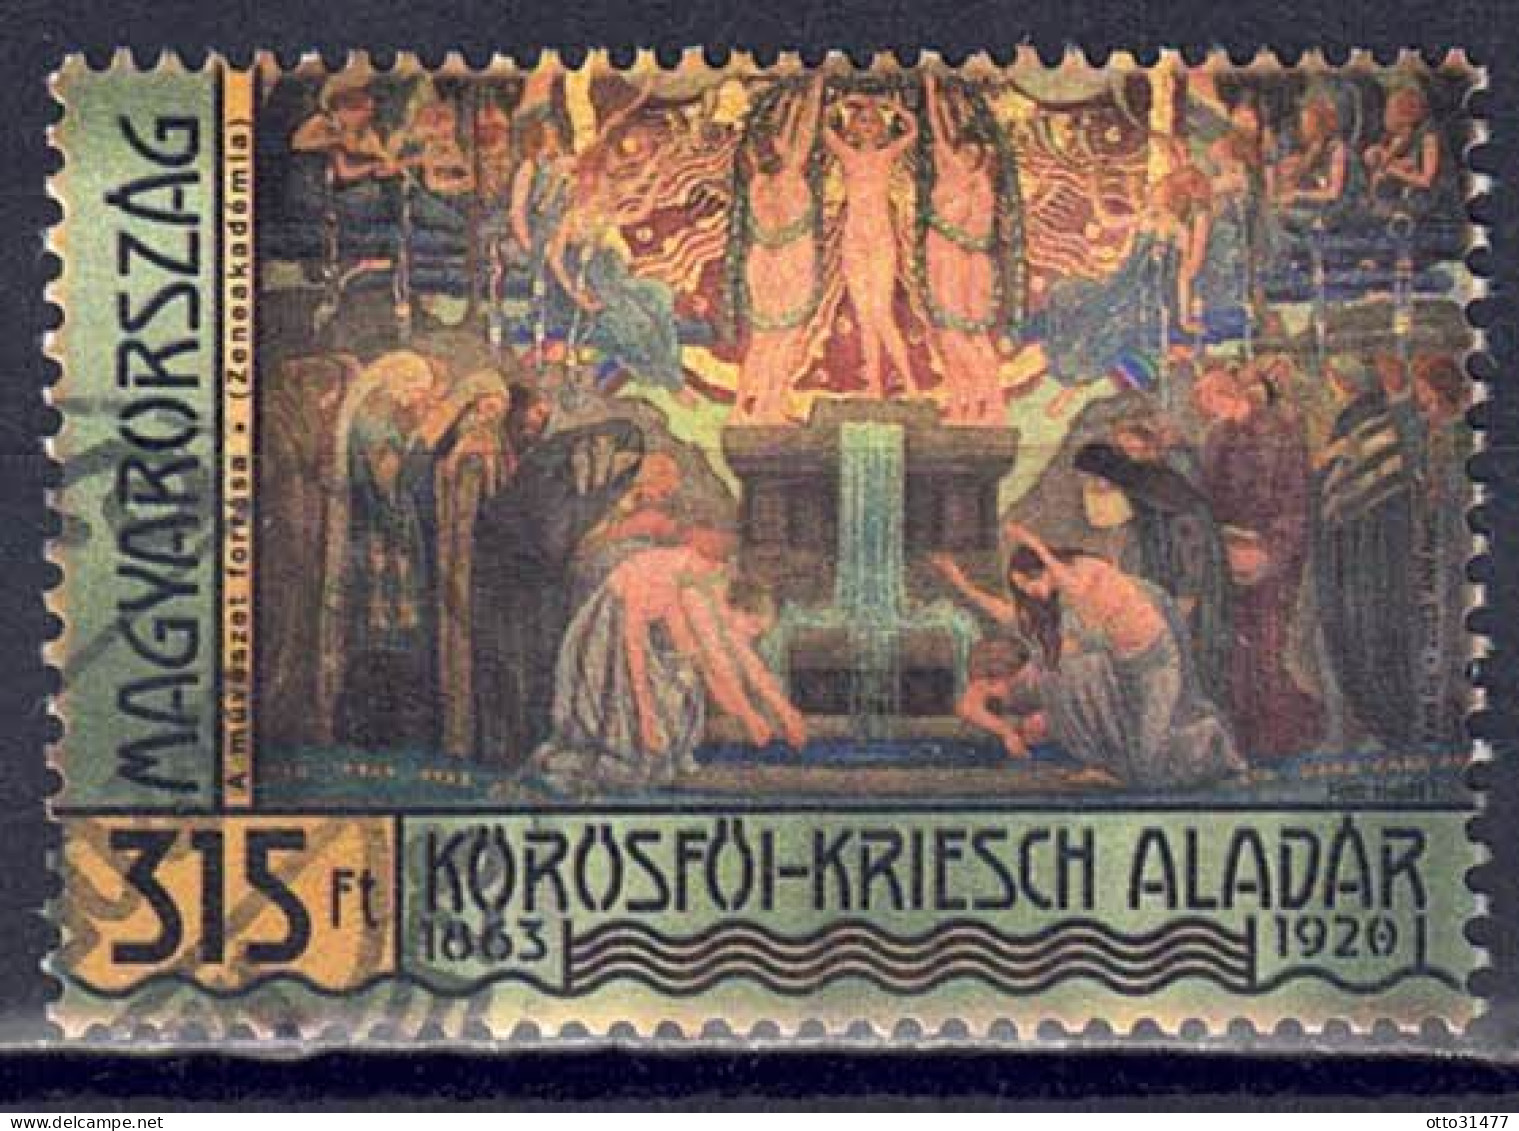 Ungarn 2013 - Aladár Körösföi-Kriesch, Nr. 5657, Gestempelt / Used - Usati